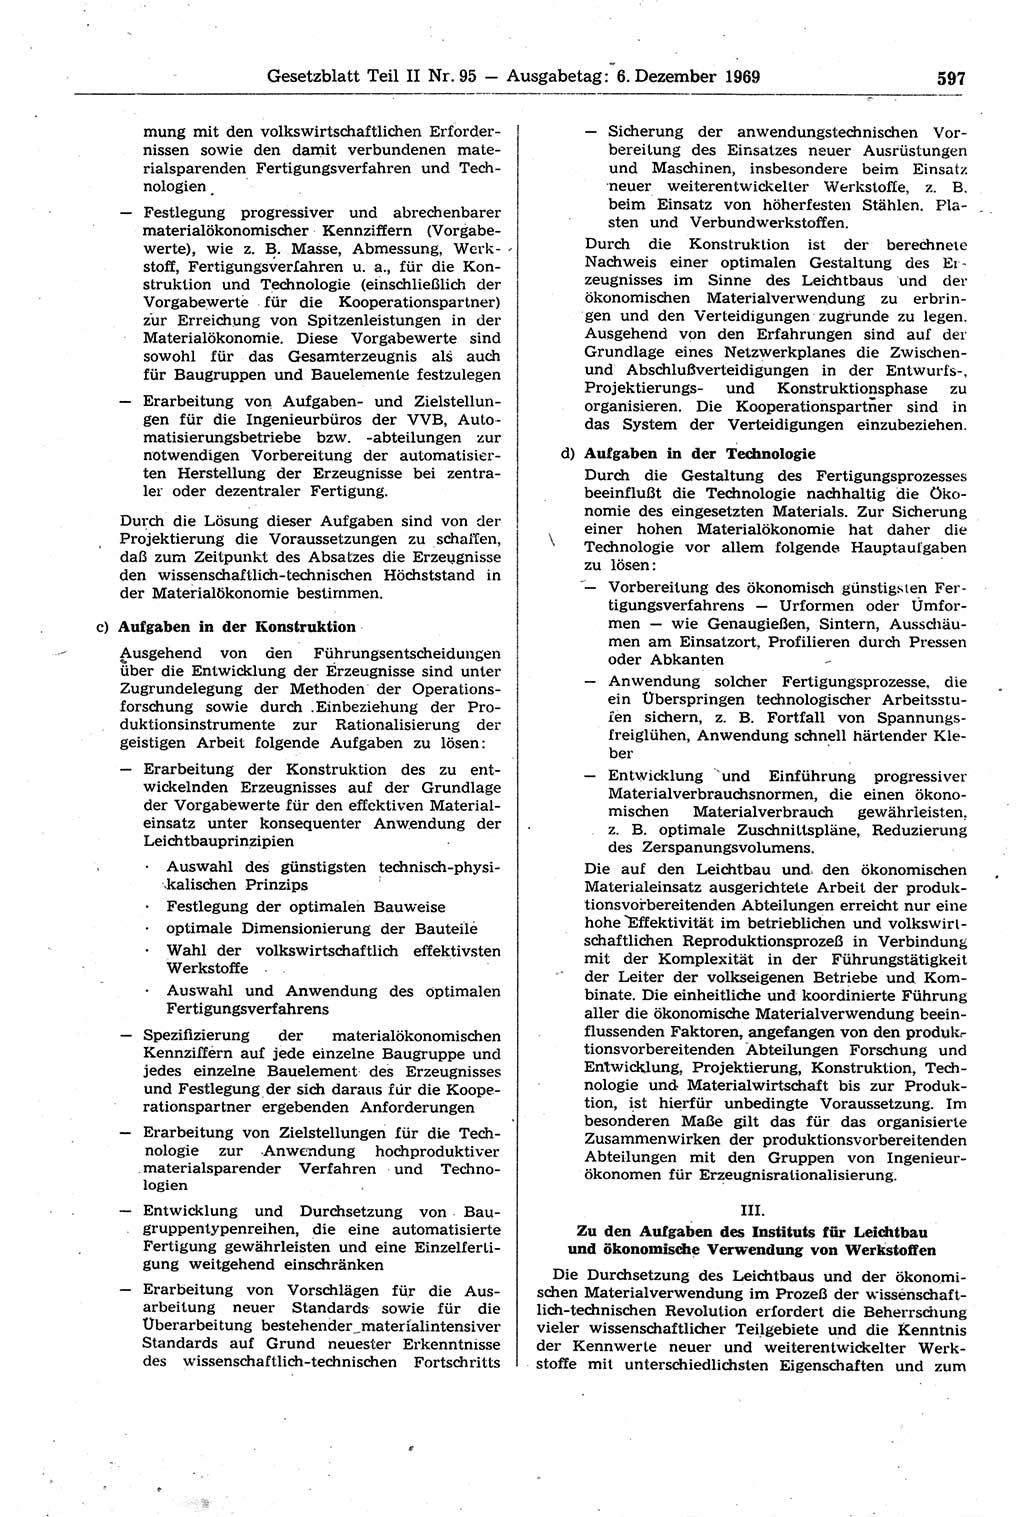 Gesetzblatt (GBl.) der Deutschen Demokratischen Republik (DDR) Teil ⅠⅠ 1969, Seite 597 (GBl. DDR ⅠⅠ 1969, S. 597)